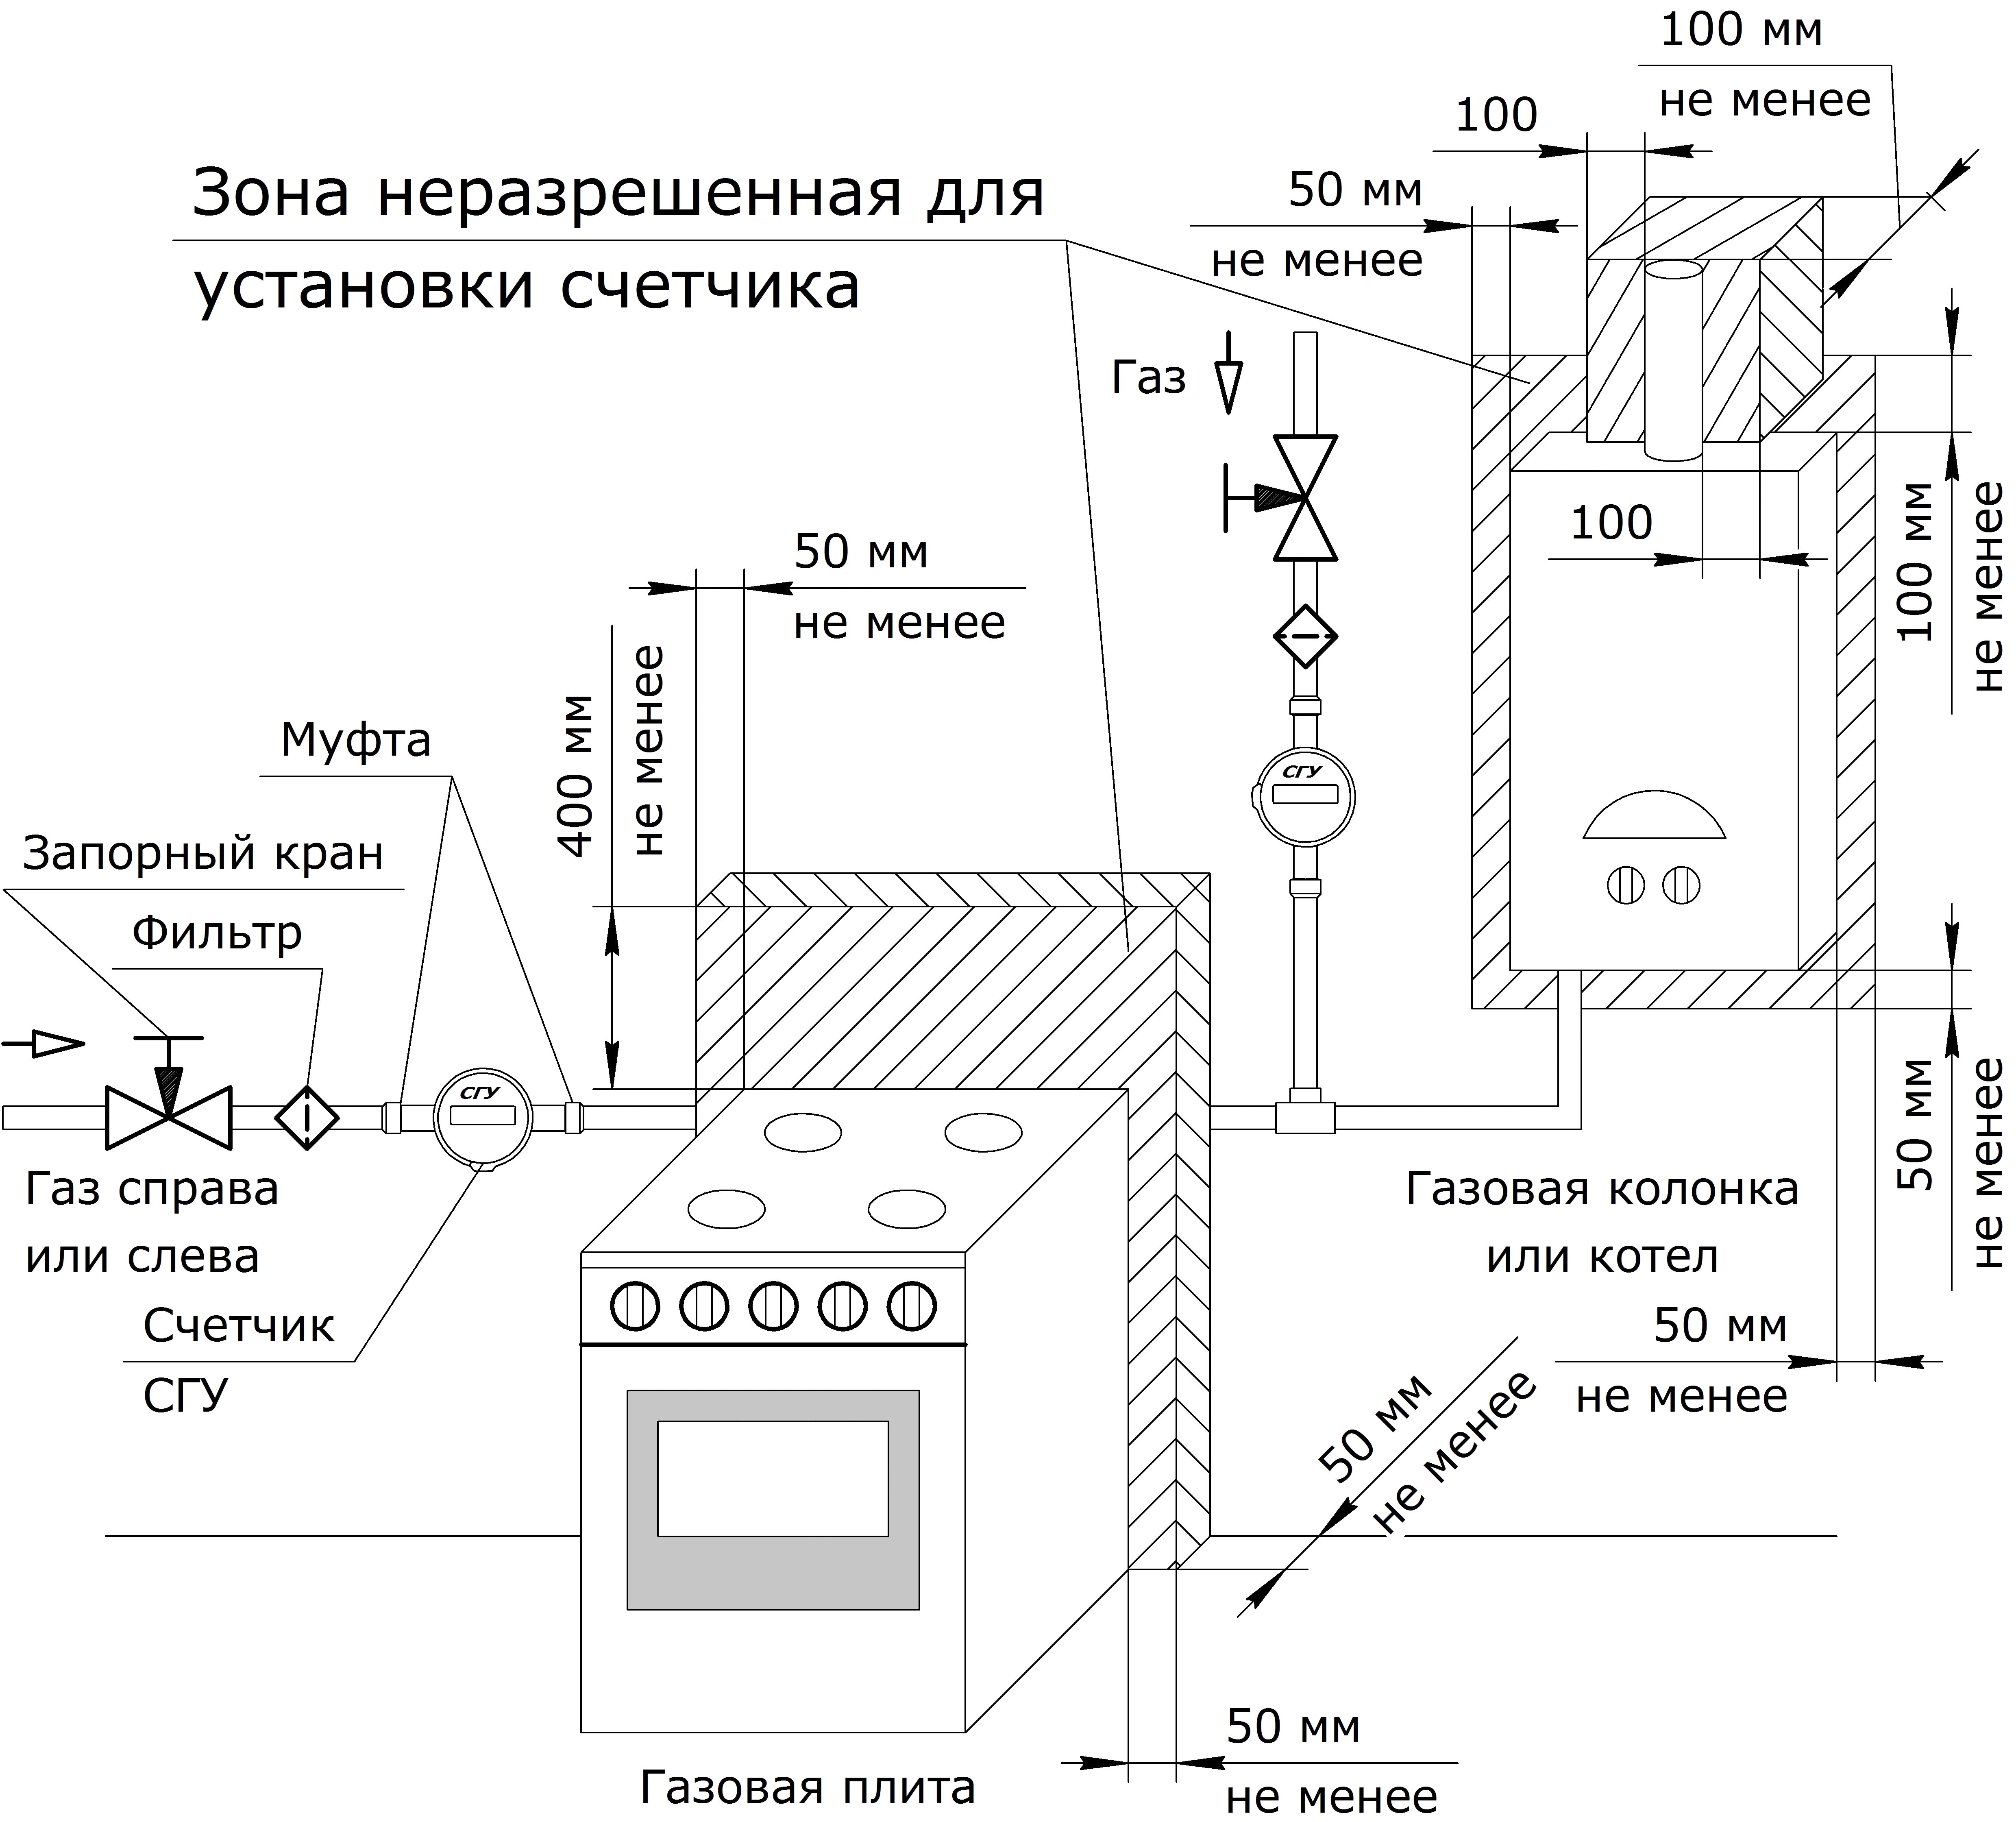 Схема установки газового счётчика с диэлектрической муфтой